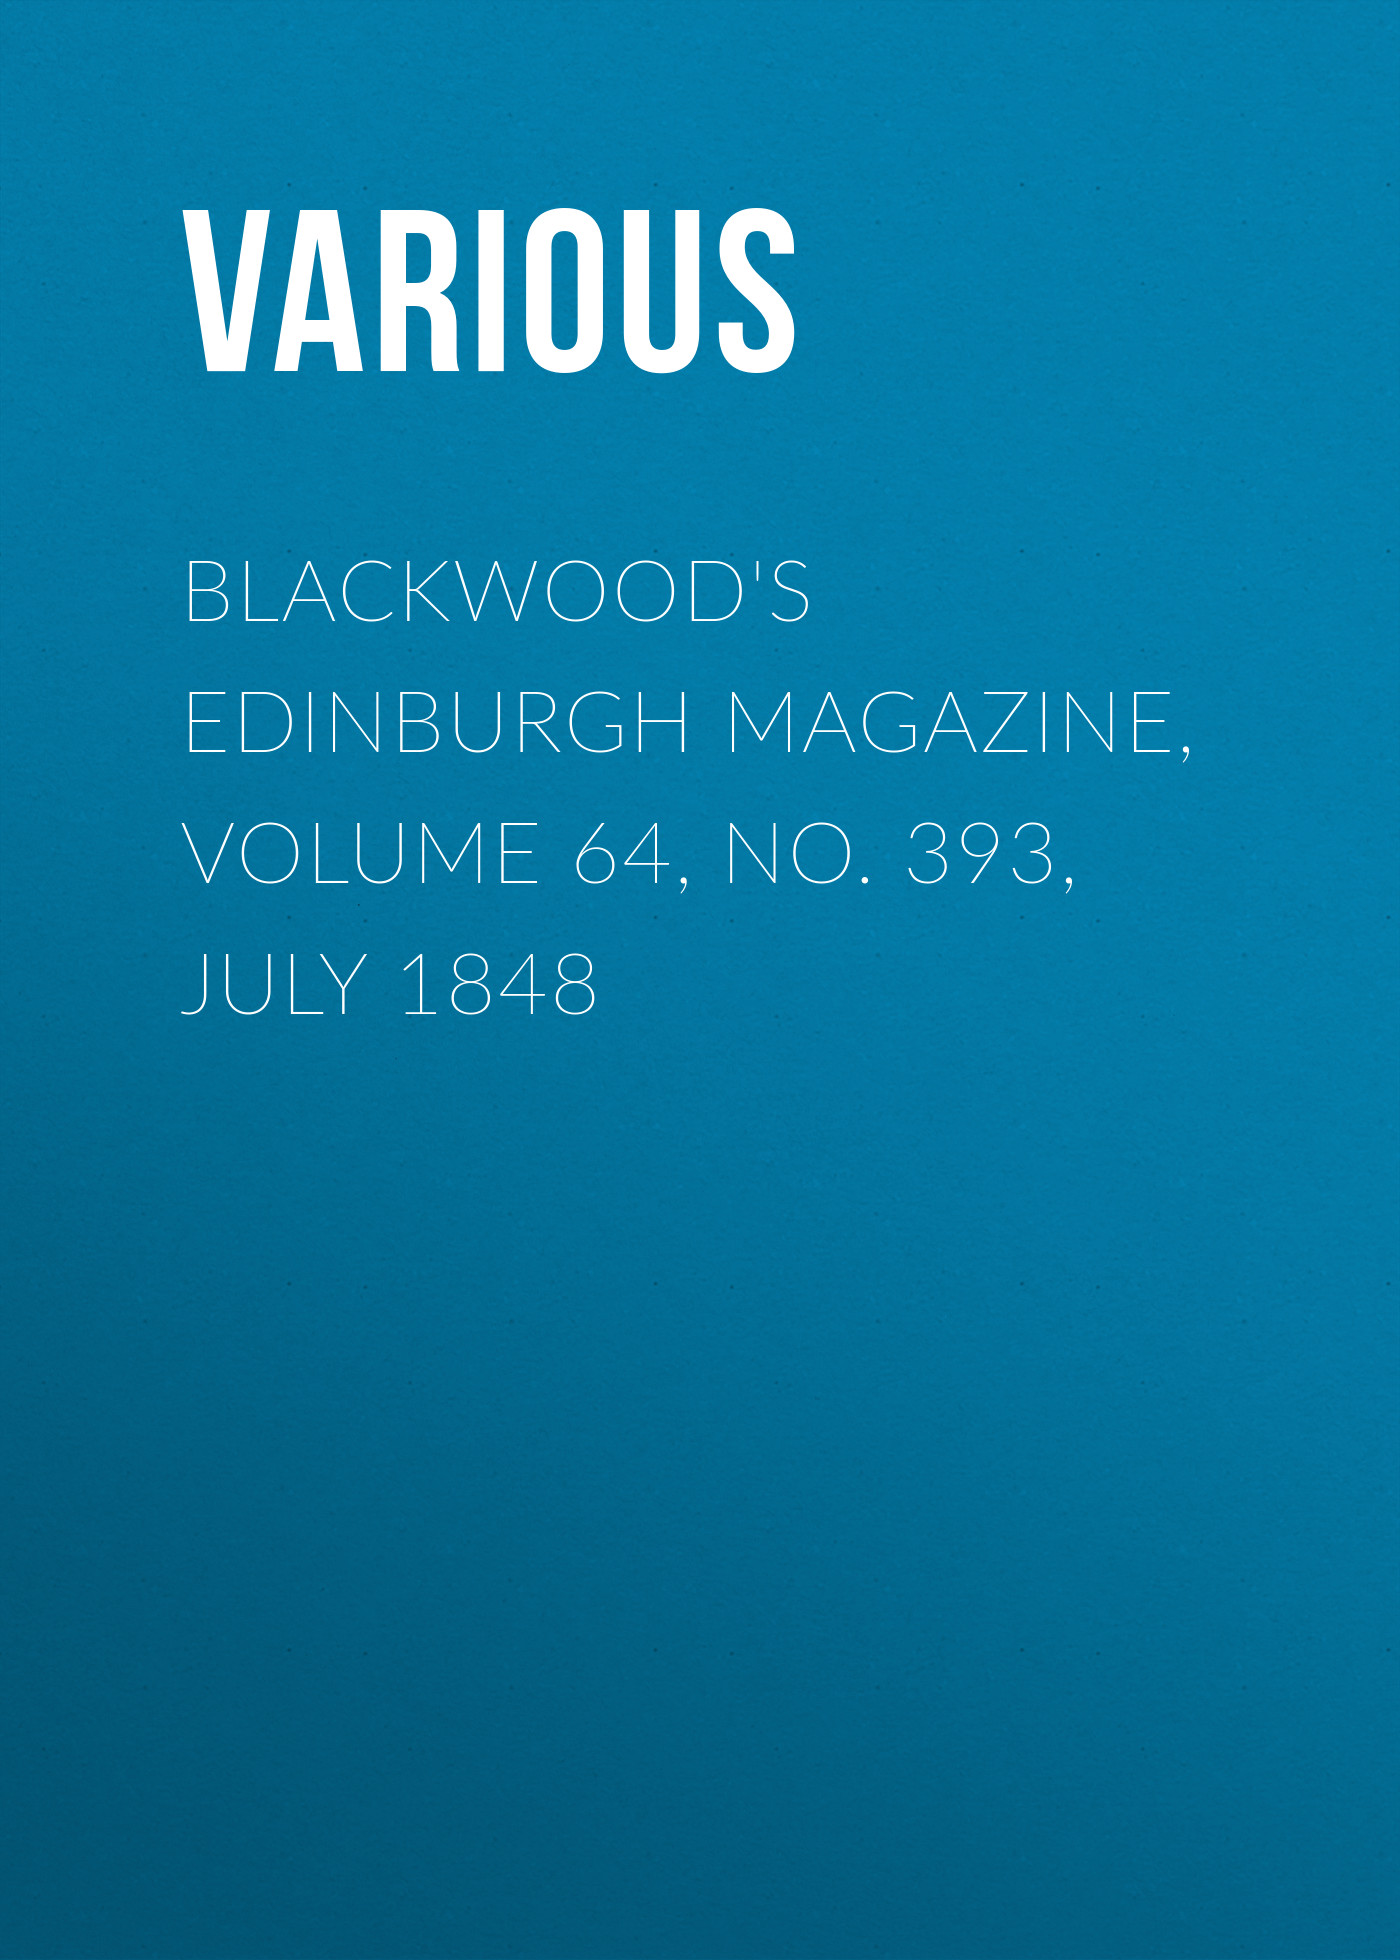 Книга Blackwood's Edinburgh Magazine, Volume 64, No. 393, July 1848 из серии , созданная  Various, может относится к жанру Журналы, Зарубежная образовательная литература, Книги о Путешествиях. Стоимость электронной книги Blackwood's Edinburgh Magazine, Volume 64, No. 393, July 1848 с идентификатором 25569495 составляет 0 руб.